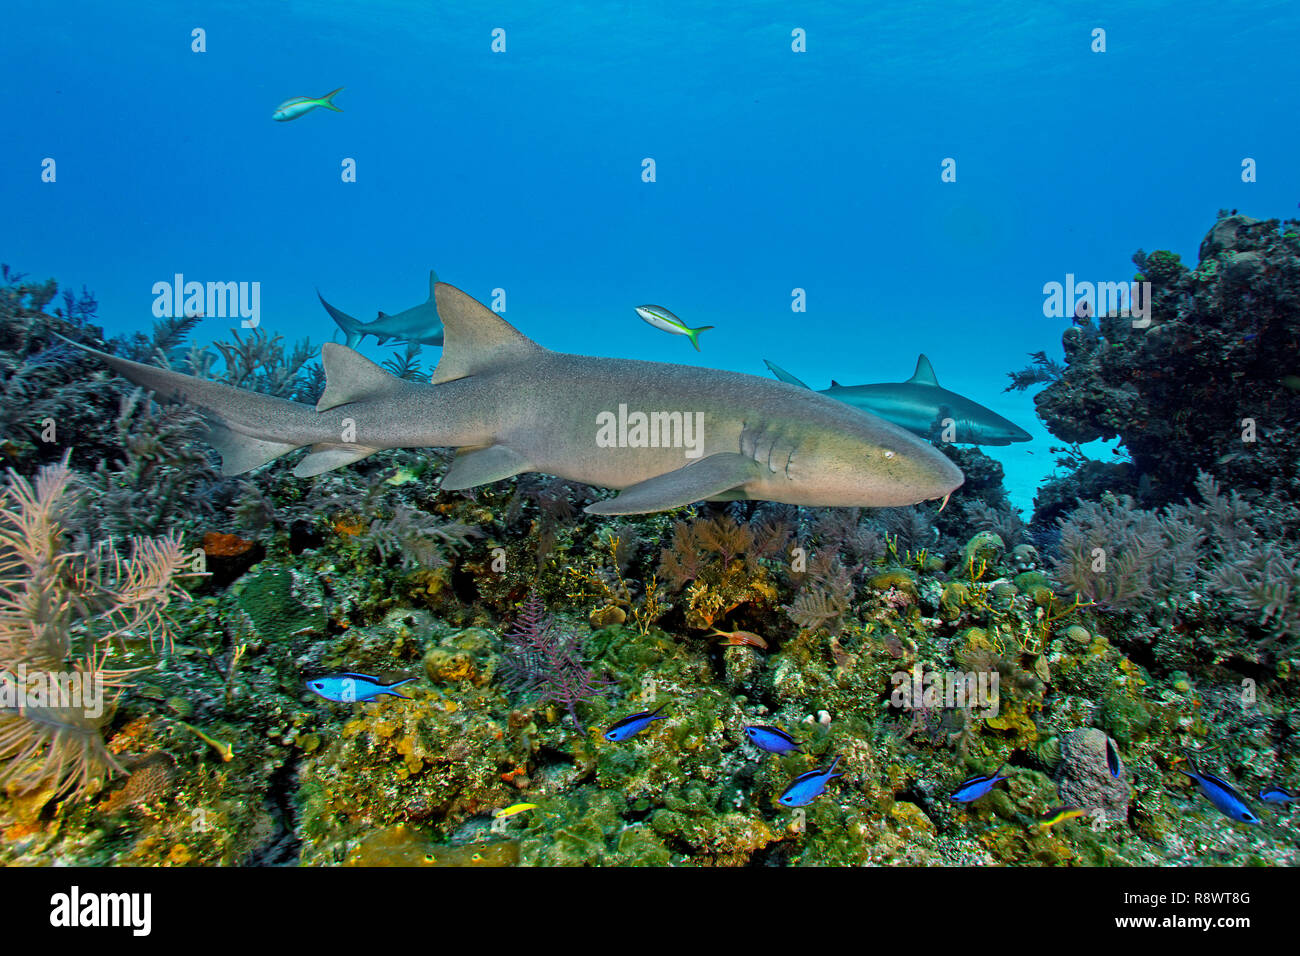 Ginglymostoma cirratum requin (infirmière), natation sur un récif de corail, derrière deux requins de récifs des Caraïbes (Carcharhinus perezi), l'île de Bimini, Bahamas Banque D'Images